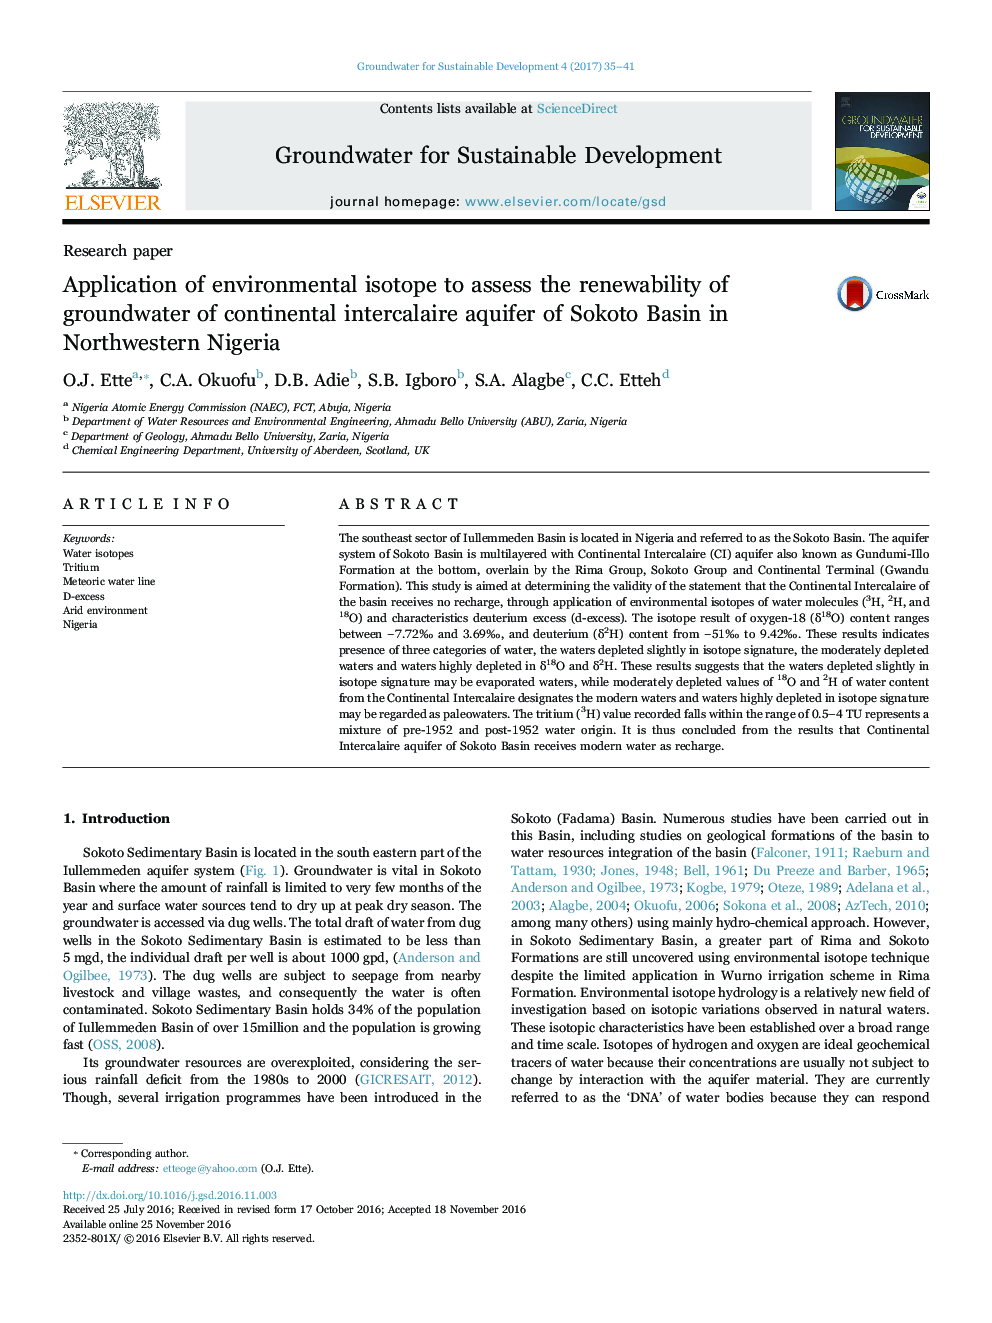 استفاده از ایزوتوپ های محیطی برای ارزیابی قابلیت بازآفرینی آب های زیرزمینی آبخوان مایع قارهای ساحلی حوضه سوکوتو در شمال غربی نیجریه 